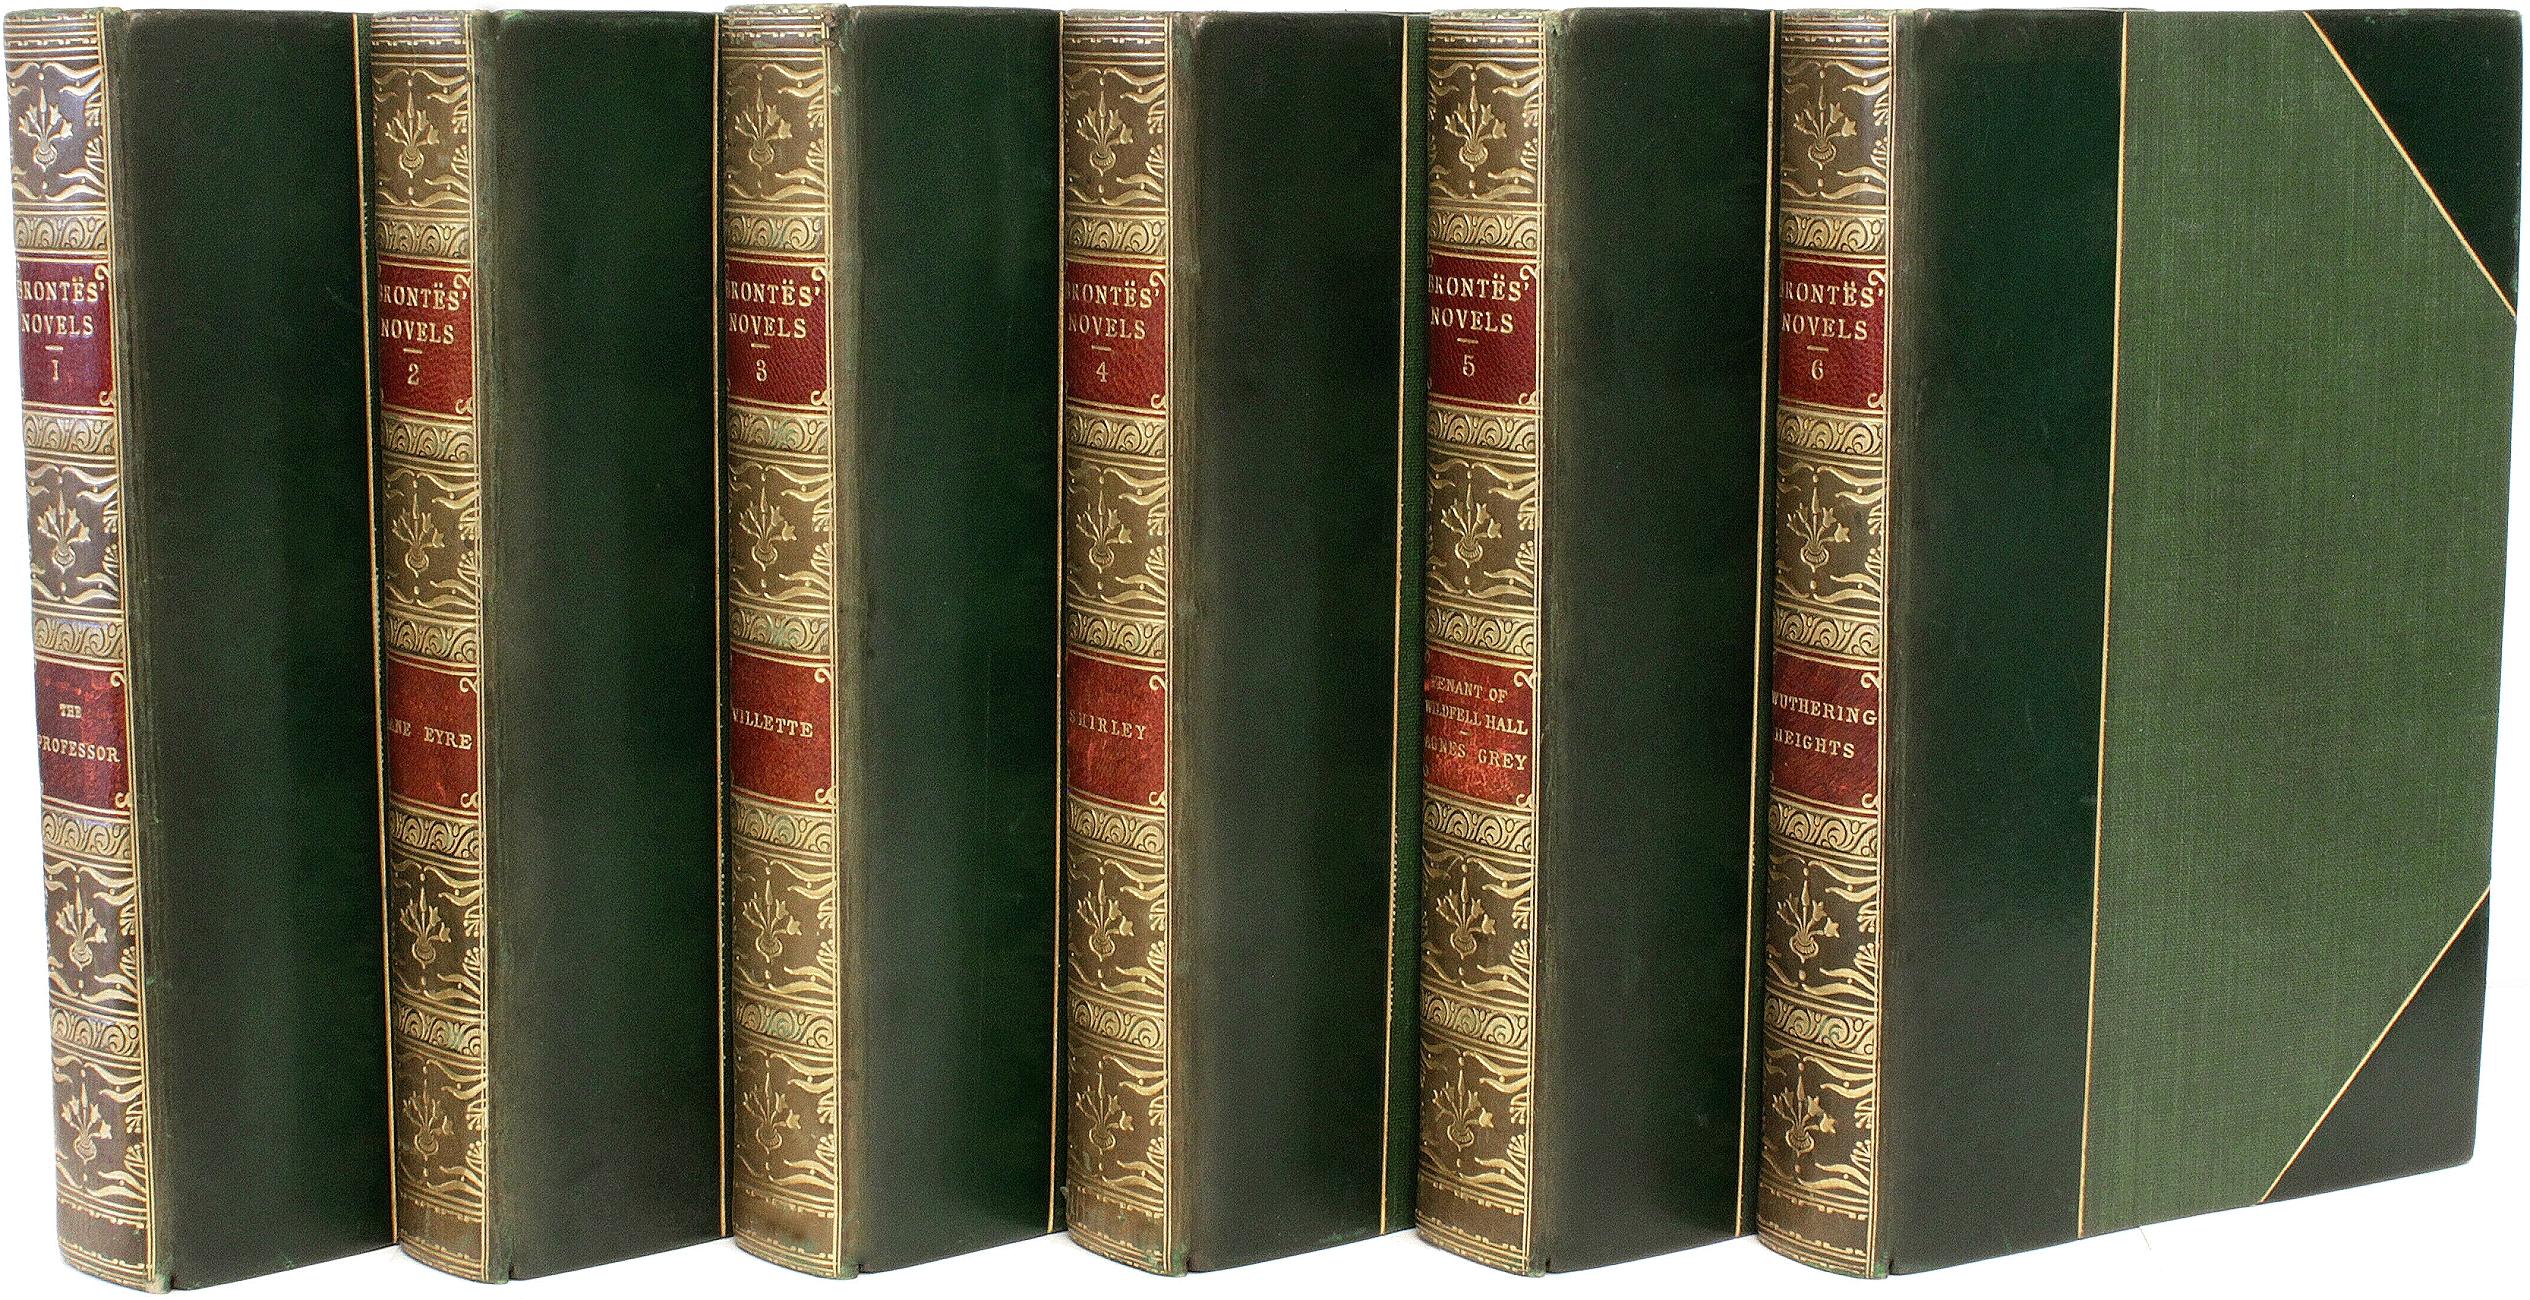 AUTHOR: BRONTE, Charlotte, Emily and Anne.
TITLE: The Novels of Charlotte, Emily, & Anne Bronte.
PUBLISHER: London: J. M. Dent & Sons, Ltd., 1922.
DESCRIPTION: 6 vols. 7-5/8